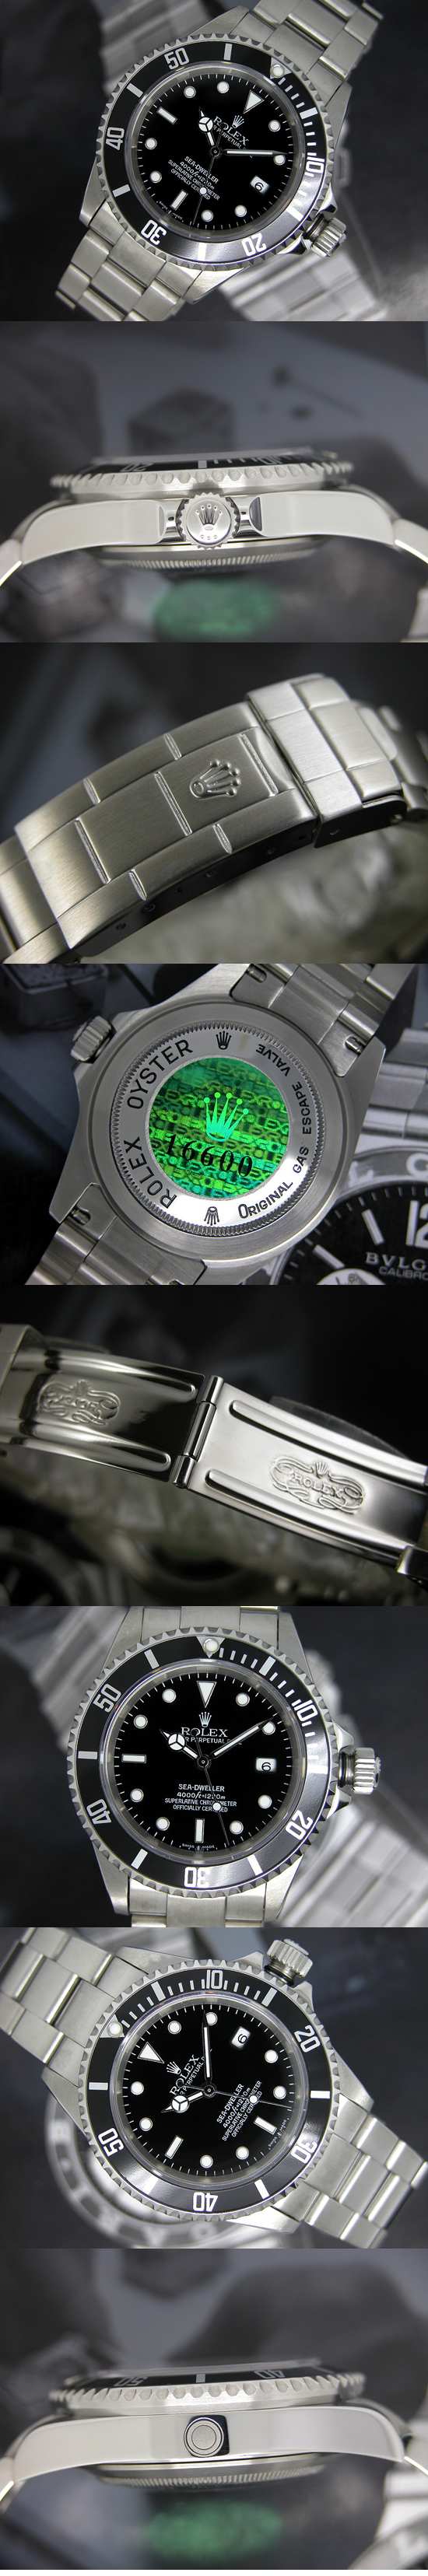 おしゃれなブランド時計がロレックス-シードゥエラー-ROLEX-16600-10-男性用を提供します.